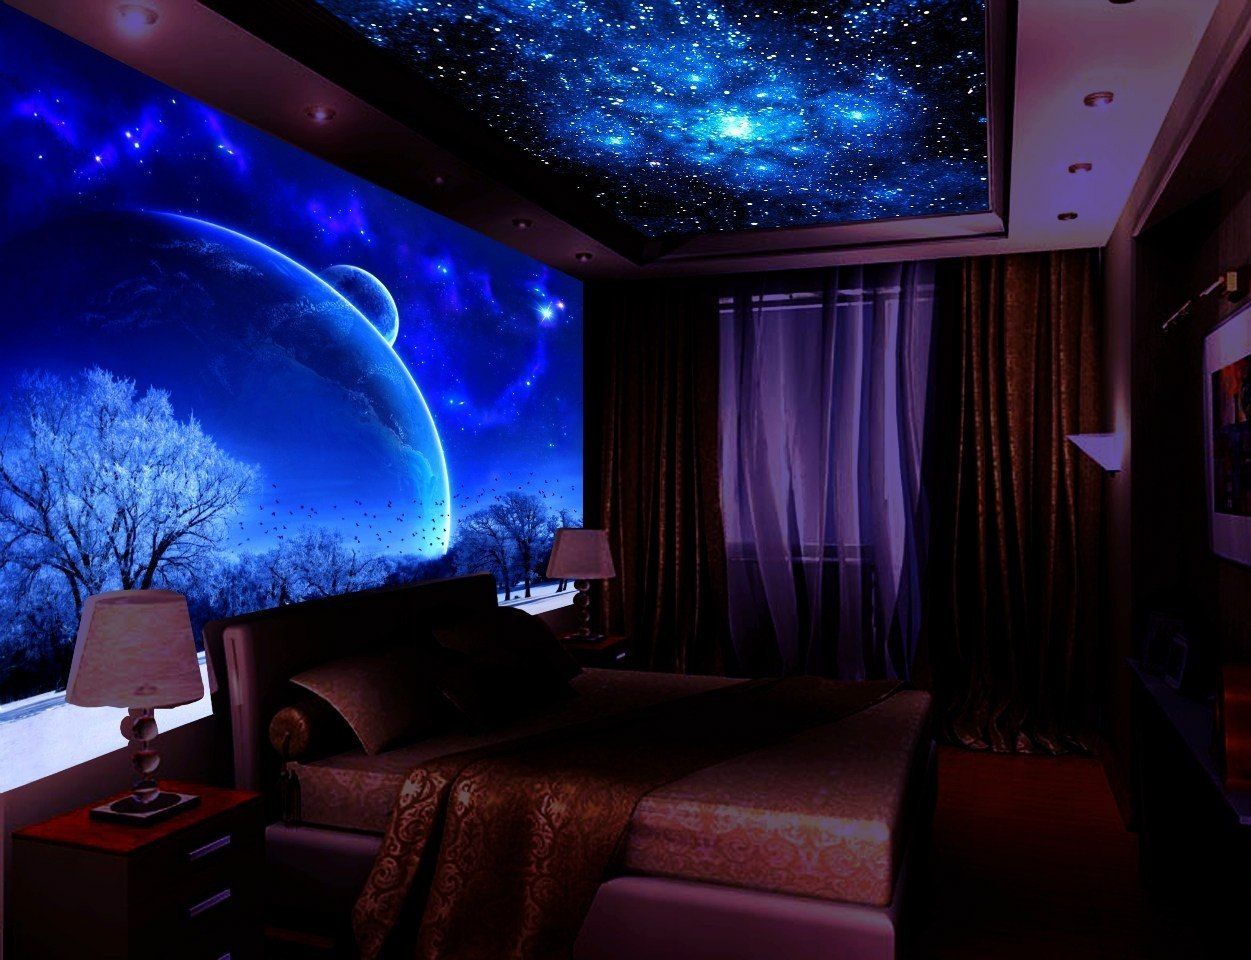 寝室の壁のための銀河の壁紙,ルーム,点灯,紫の,天井,インテリア・デザイン